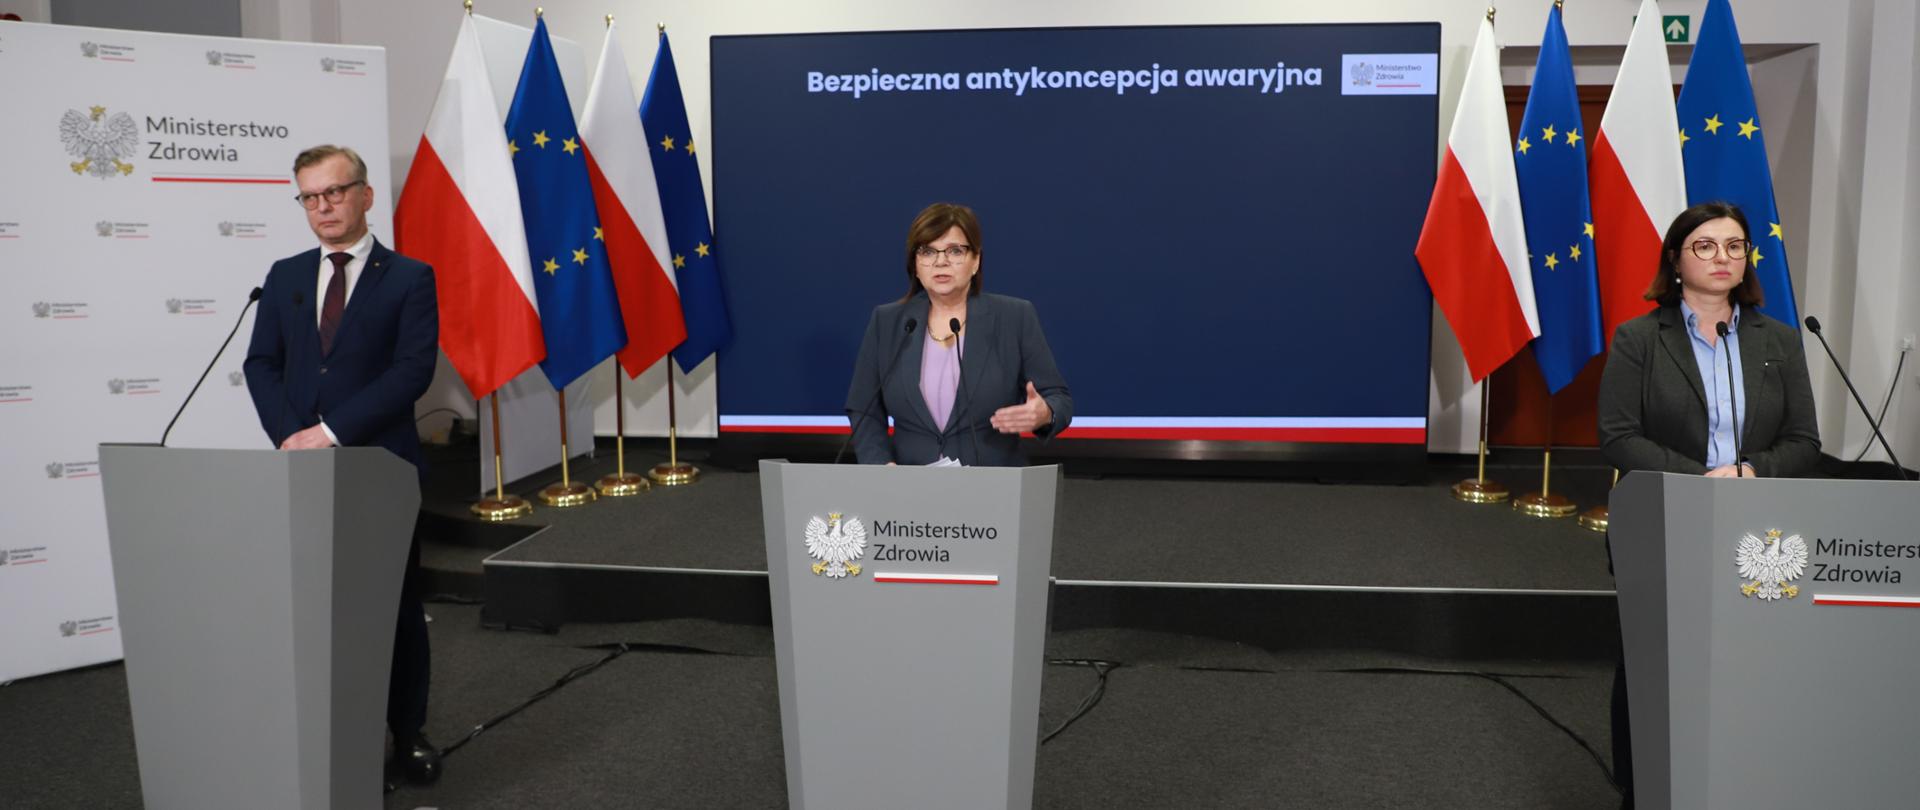 Zdjęcie minister Izabeli Leszczyny z konferencji prasowej